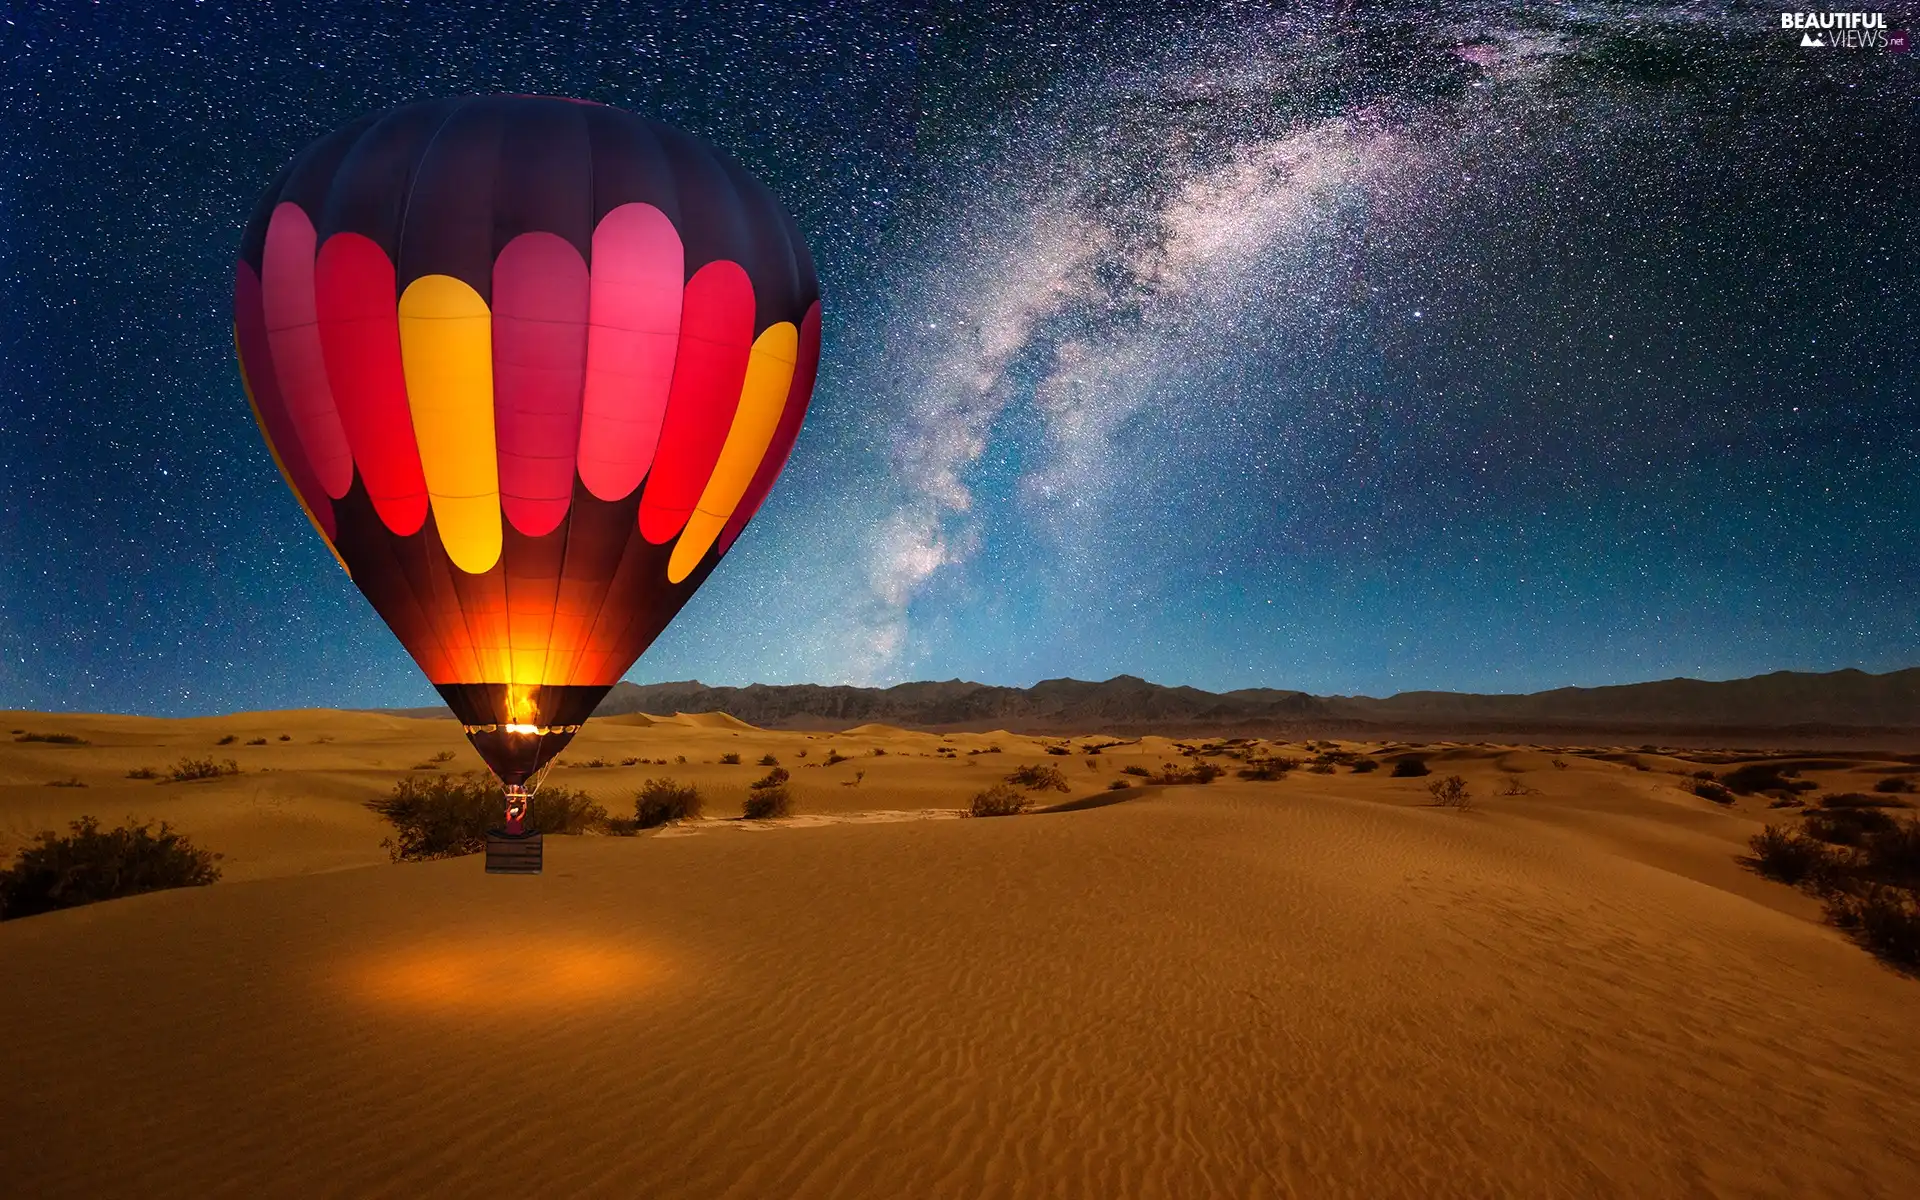 Night, Desert, Balloon, star